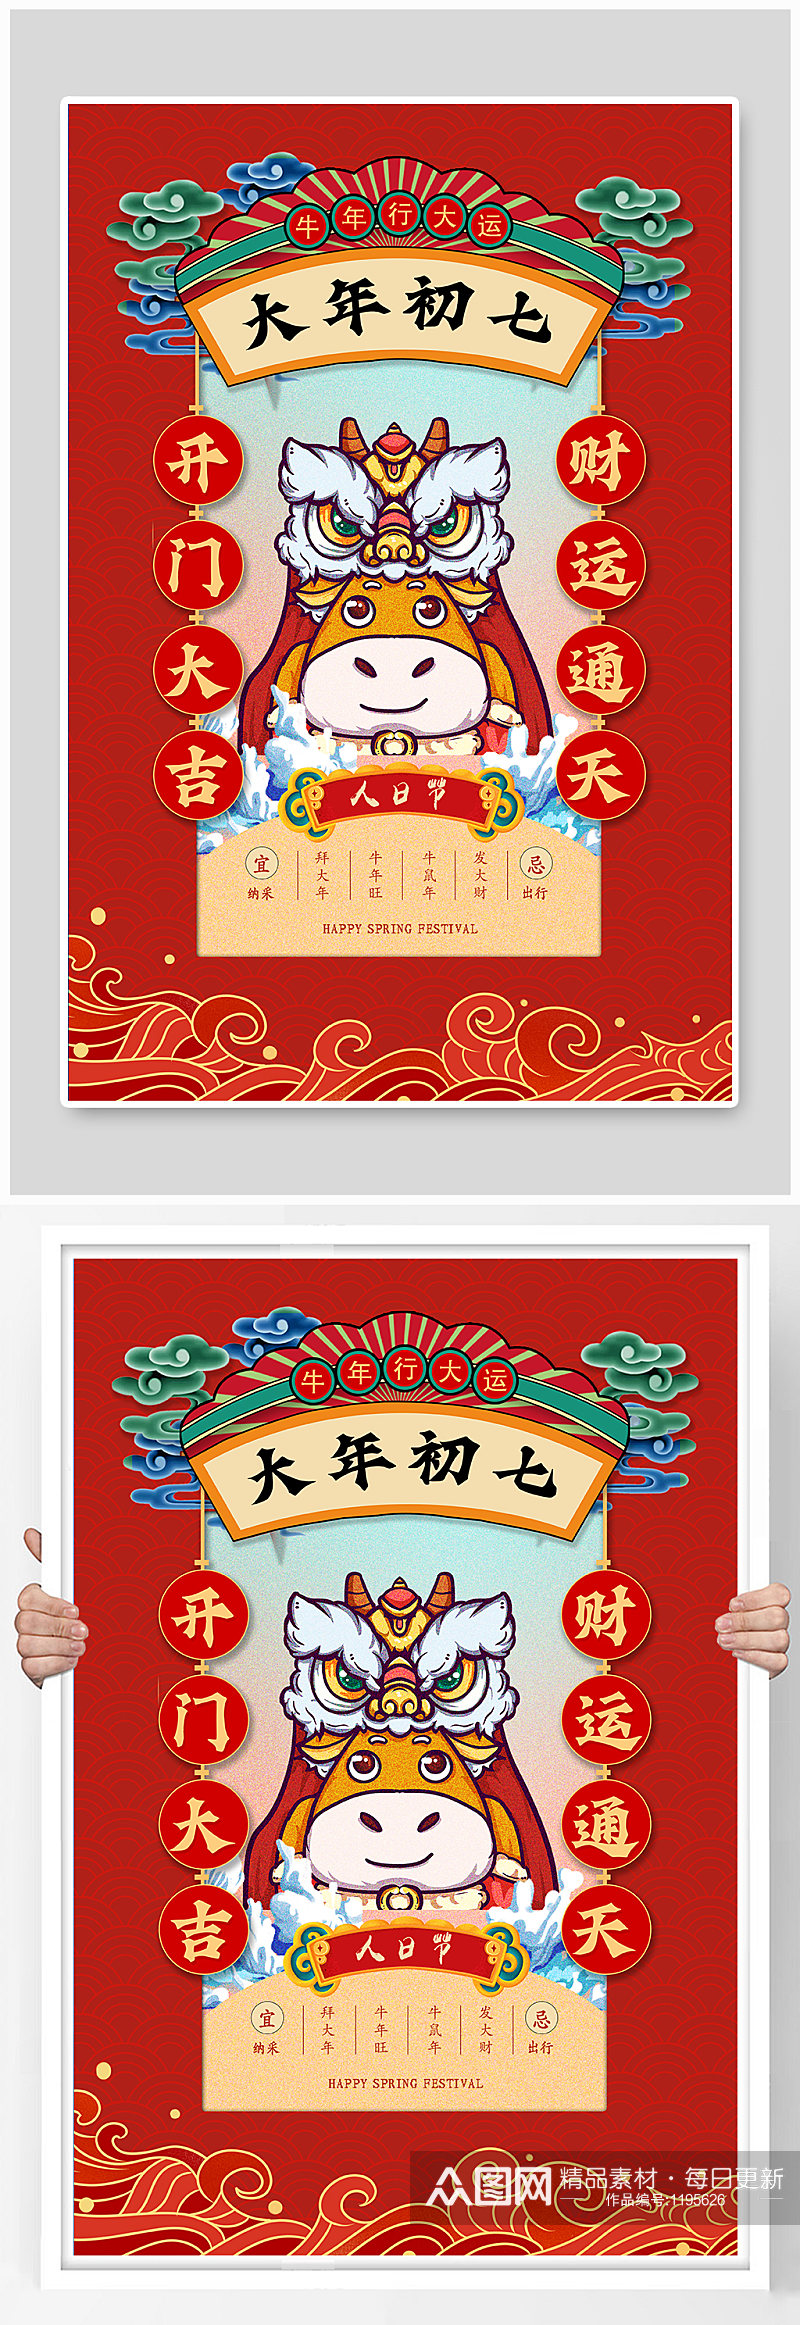 红色中国风大年初七人日节海报素材